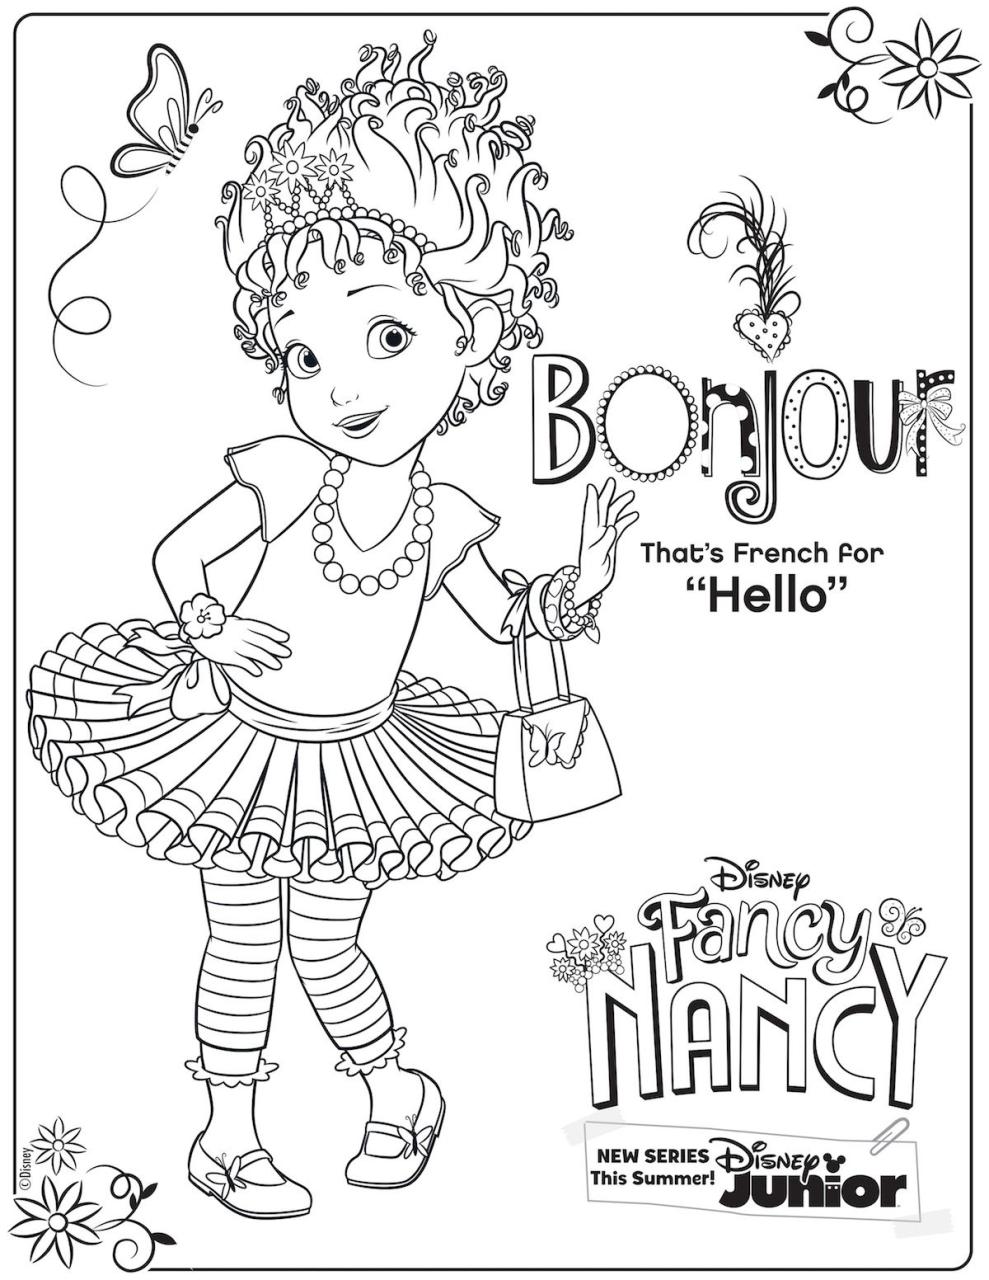 Printable Pictures Of Fancy Nancy Fancy nancy party, Mermaid coloring